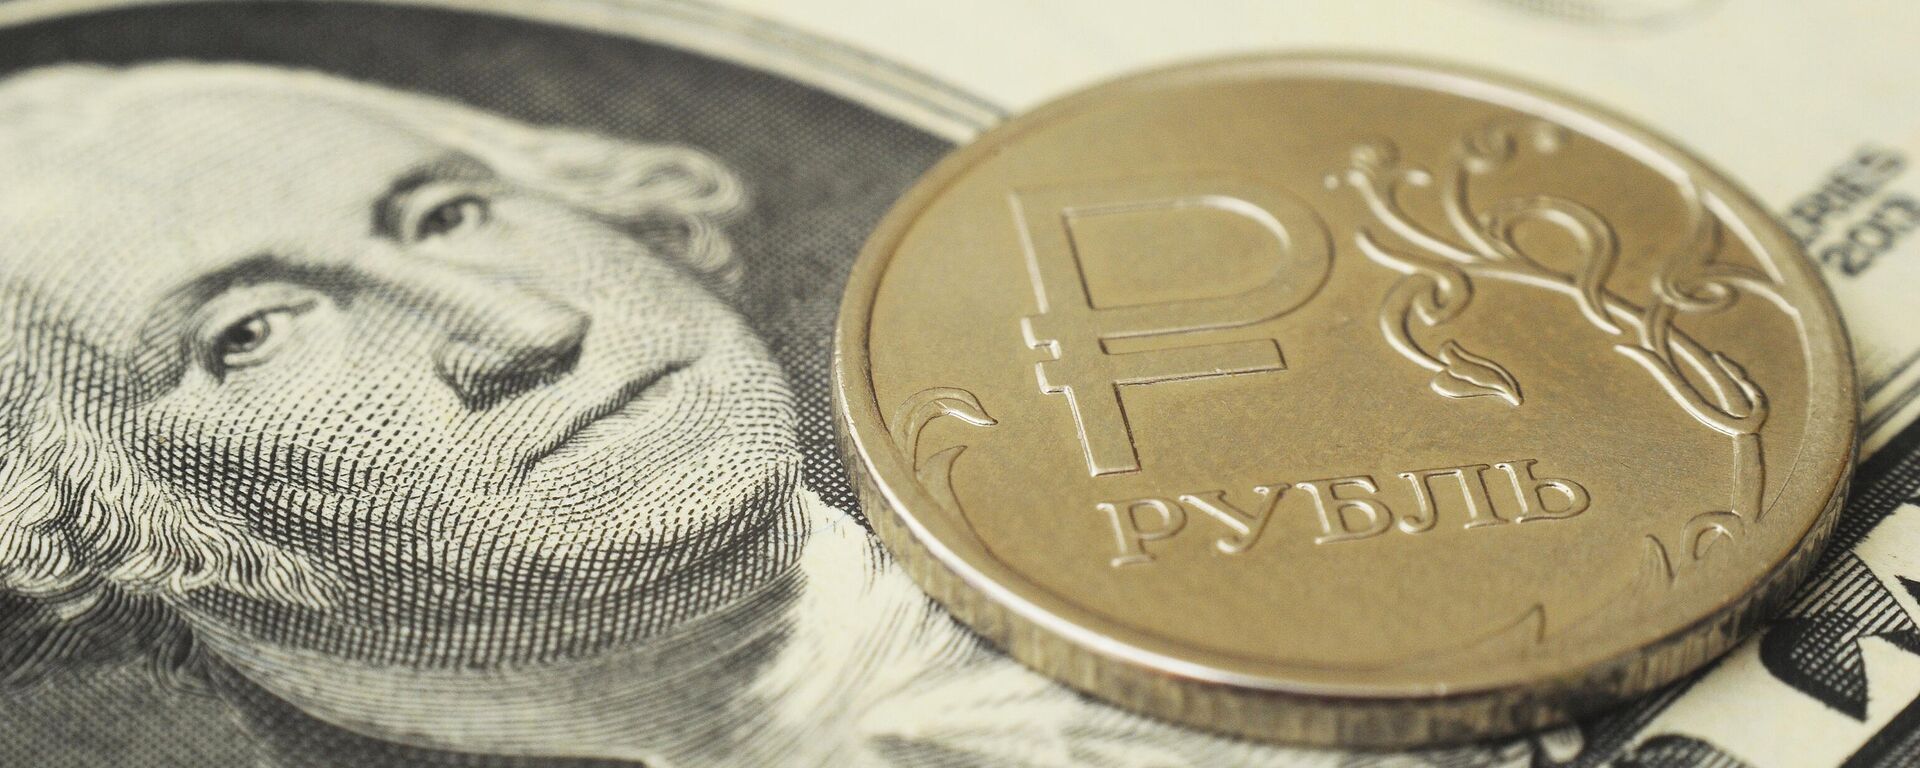 Монета номиналом один рубль на банкноте один доллар США. - Sputnik Аҧсны, 1920, 15.02.2023